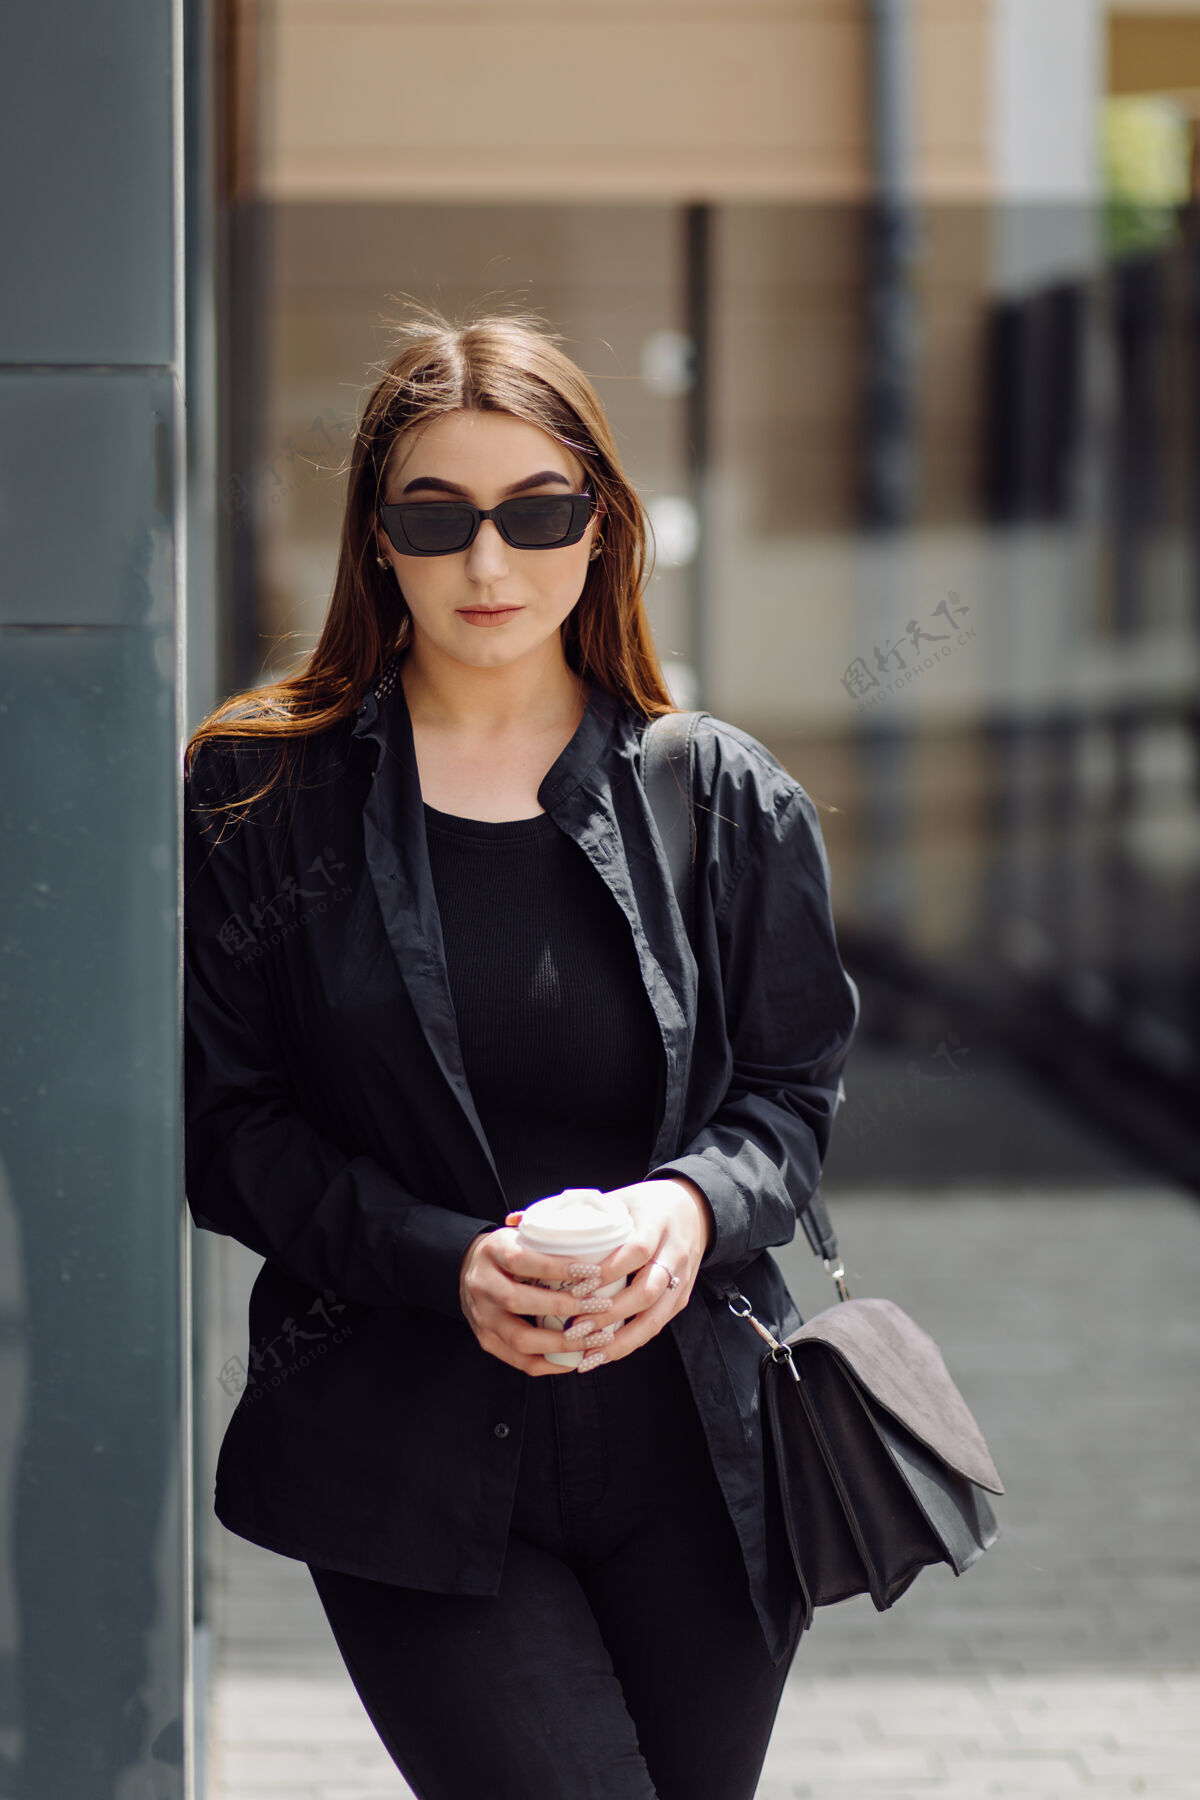 杯子户外生活写真迷人的黑发女孩喝咖啡 走在城市街道上夹克秋天太阳镜